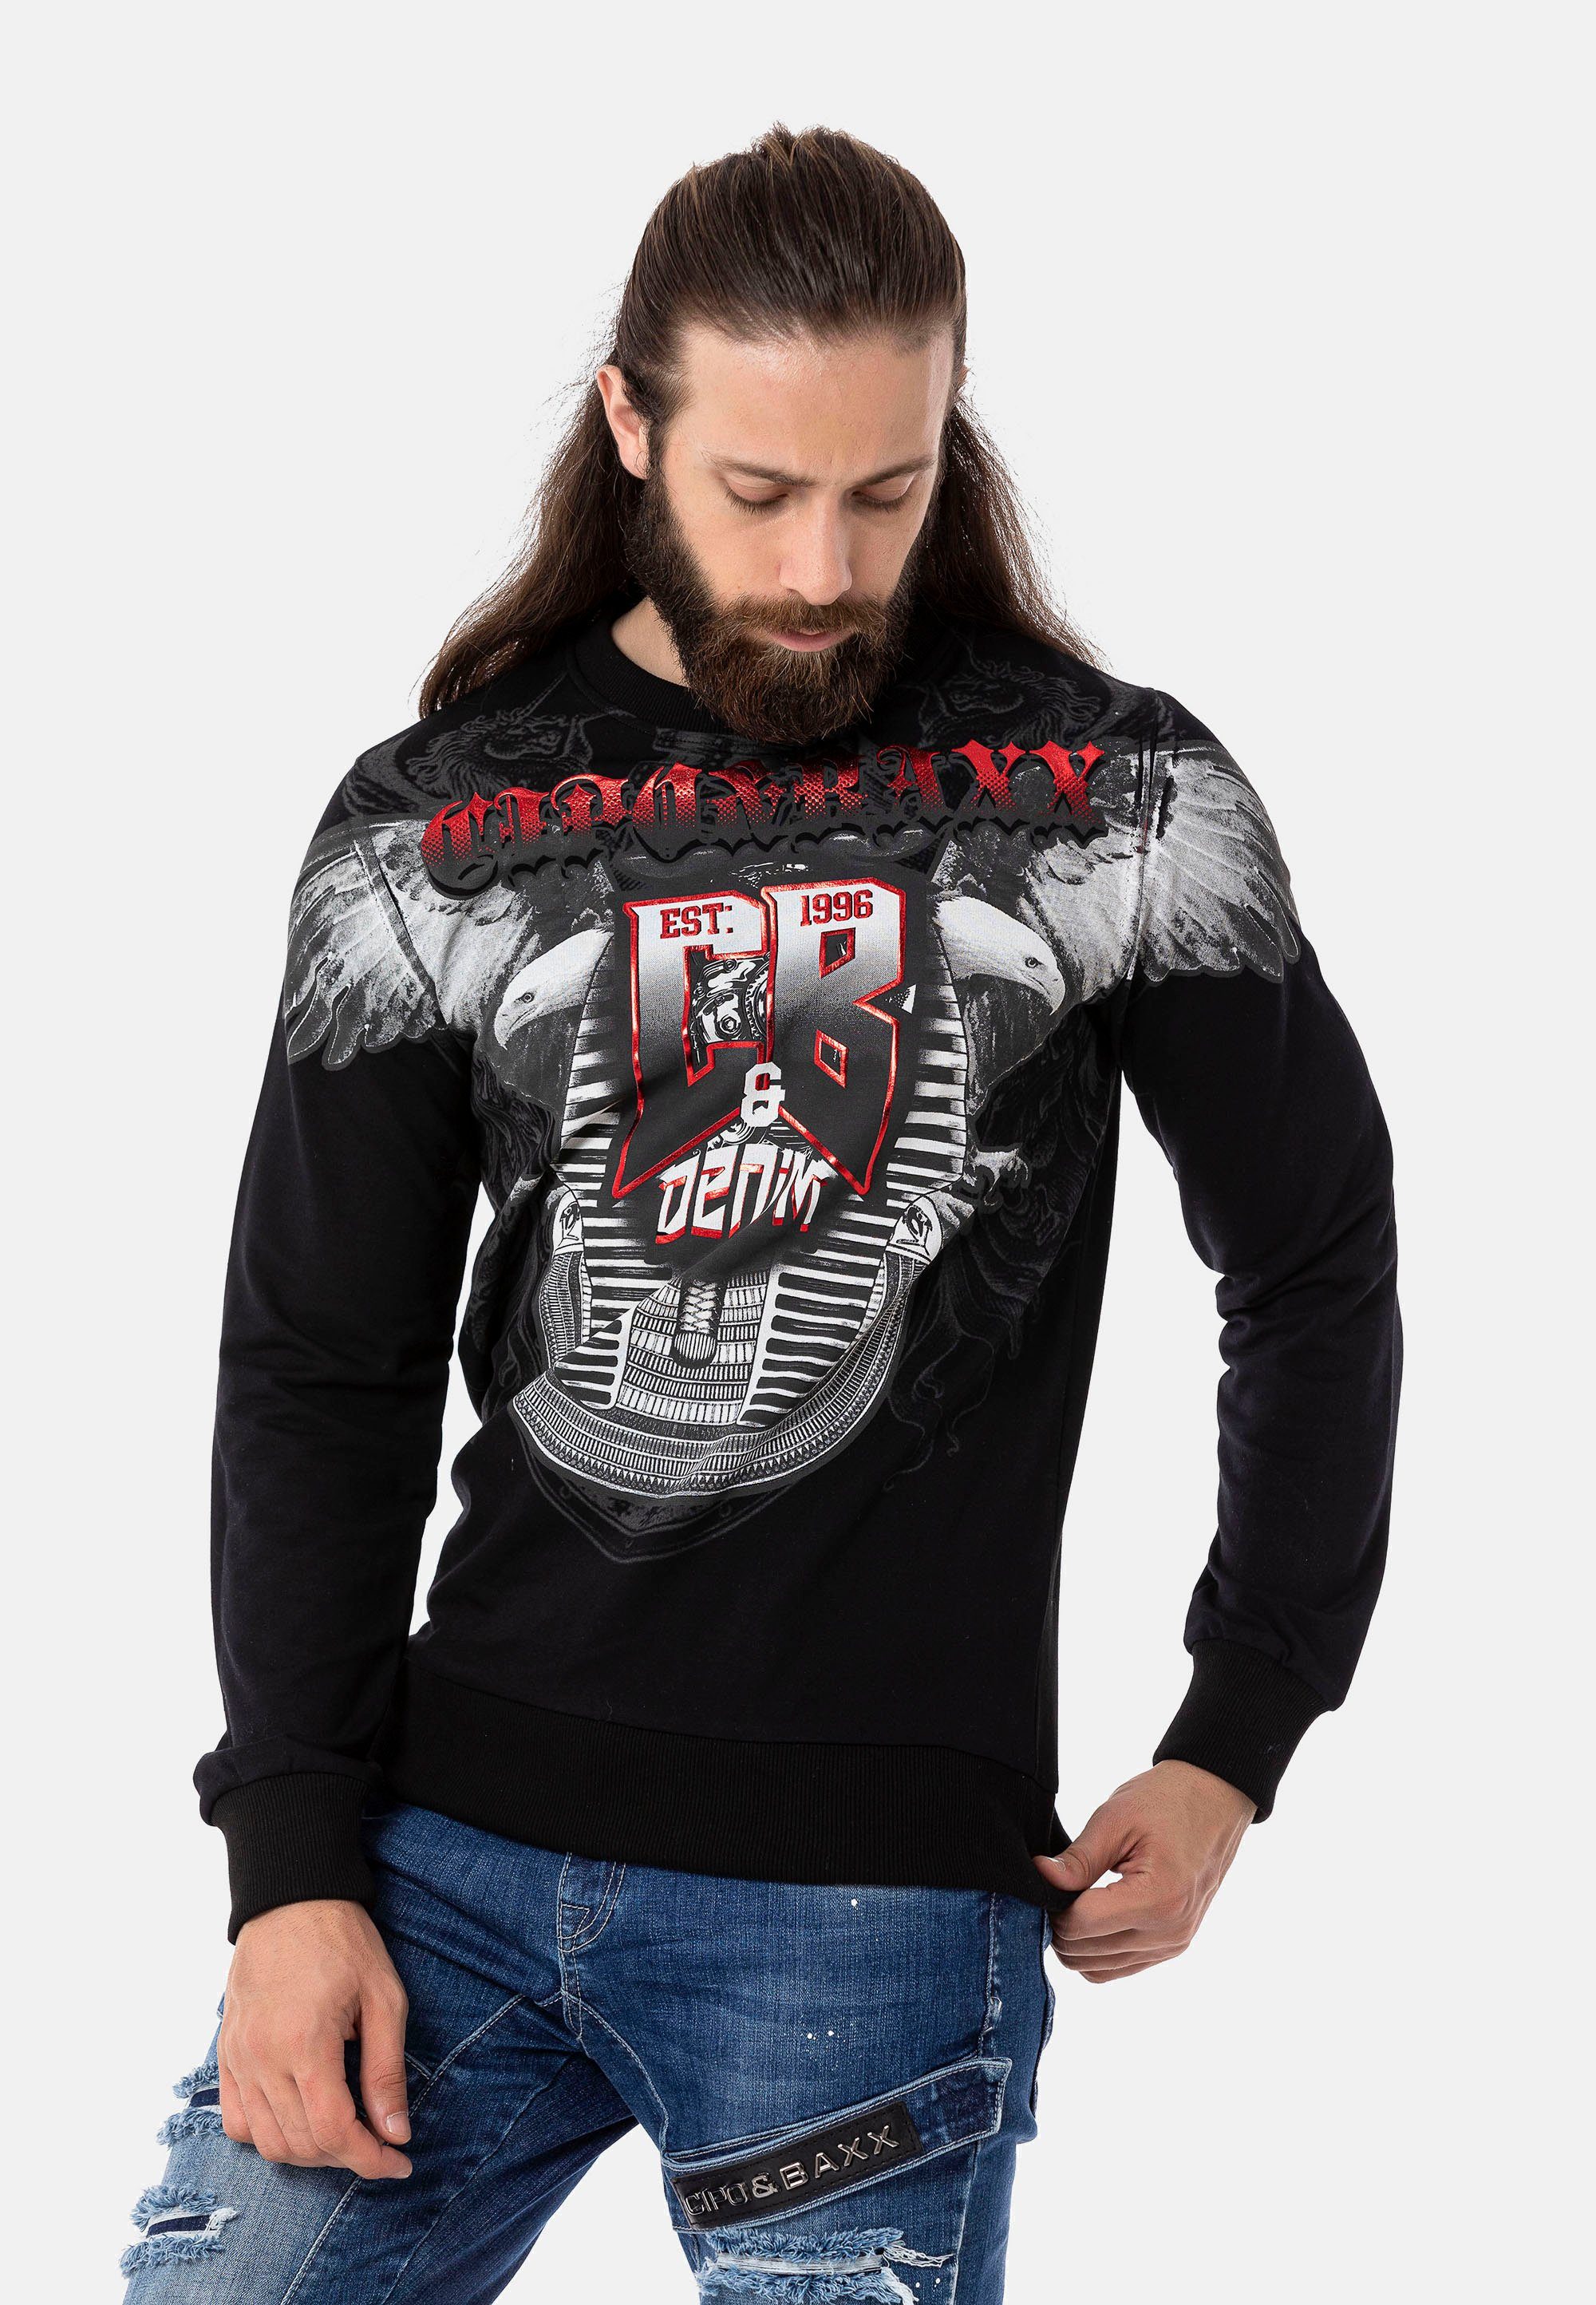 schwarz mit Print Baxx großem Cipo & Sweatshirt